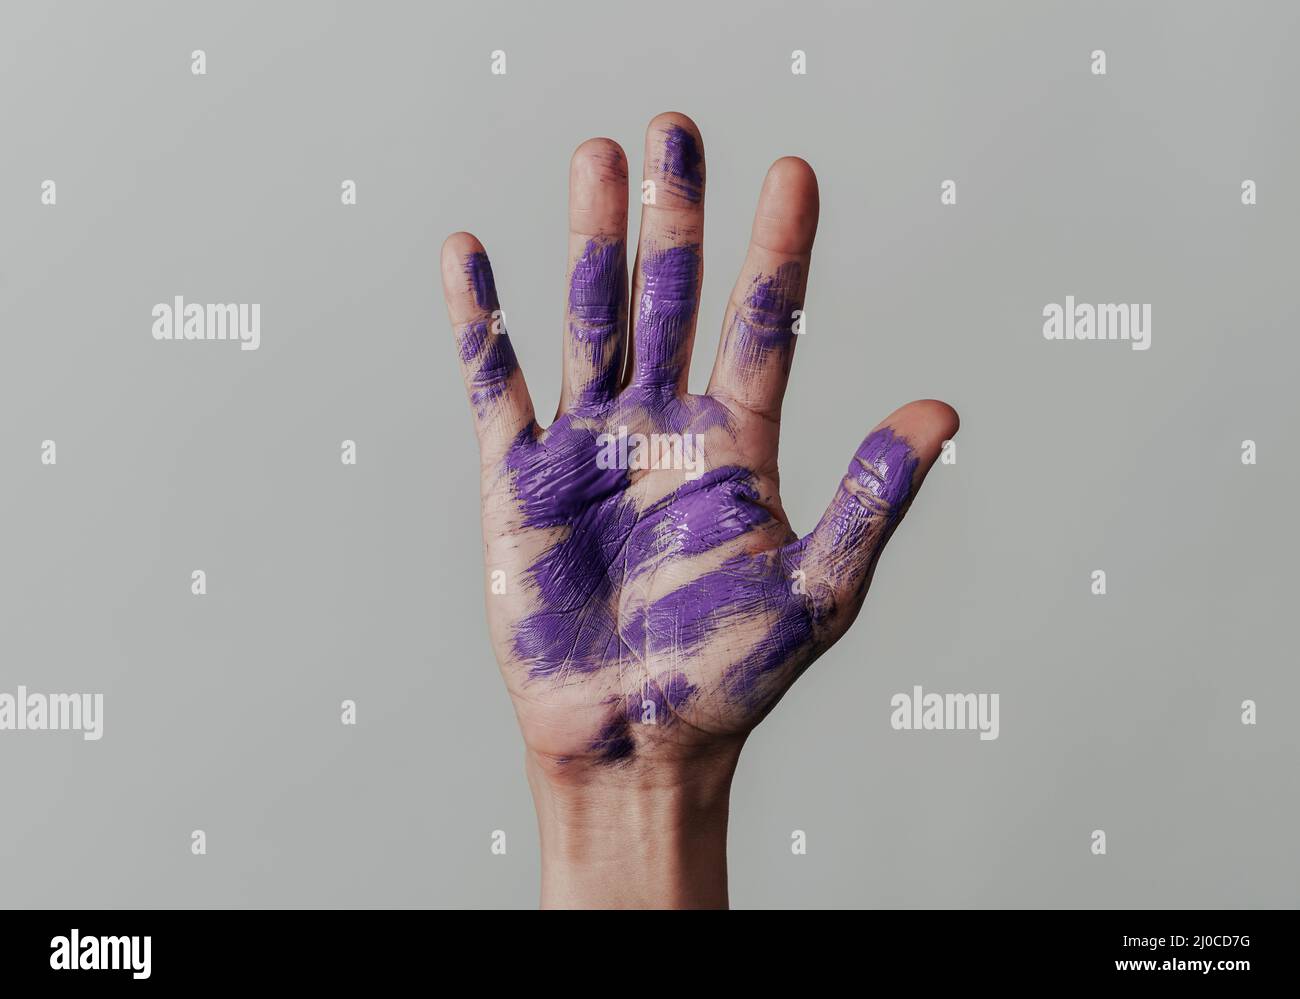 Nahaufnahme der erhobenen Hand eines Mannes mit einigen violetten Farbflecken in seiner Handfläche auf einem hellgrauen Hintergrund Stockfoto